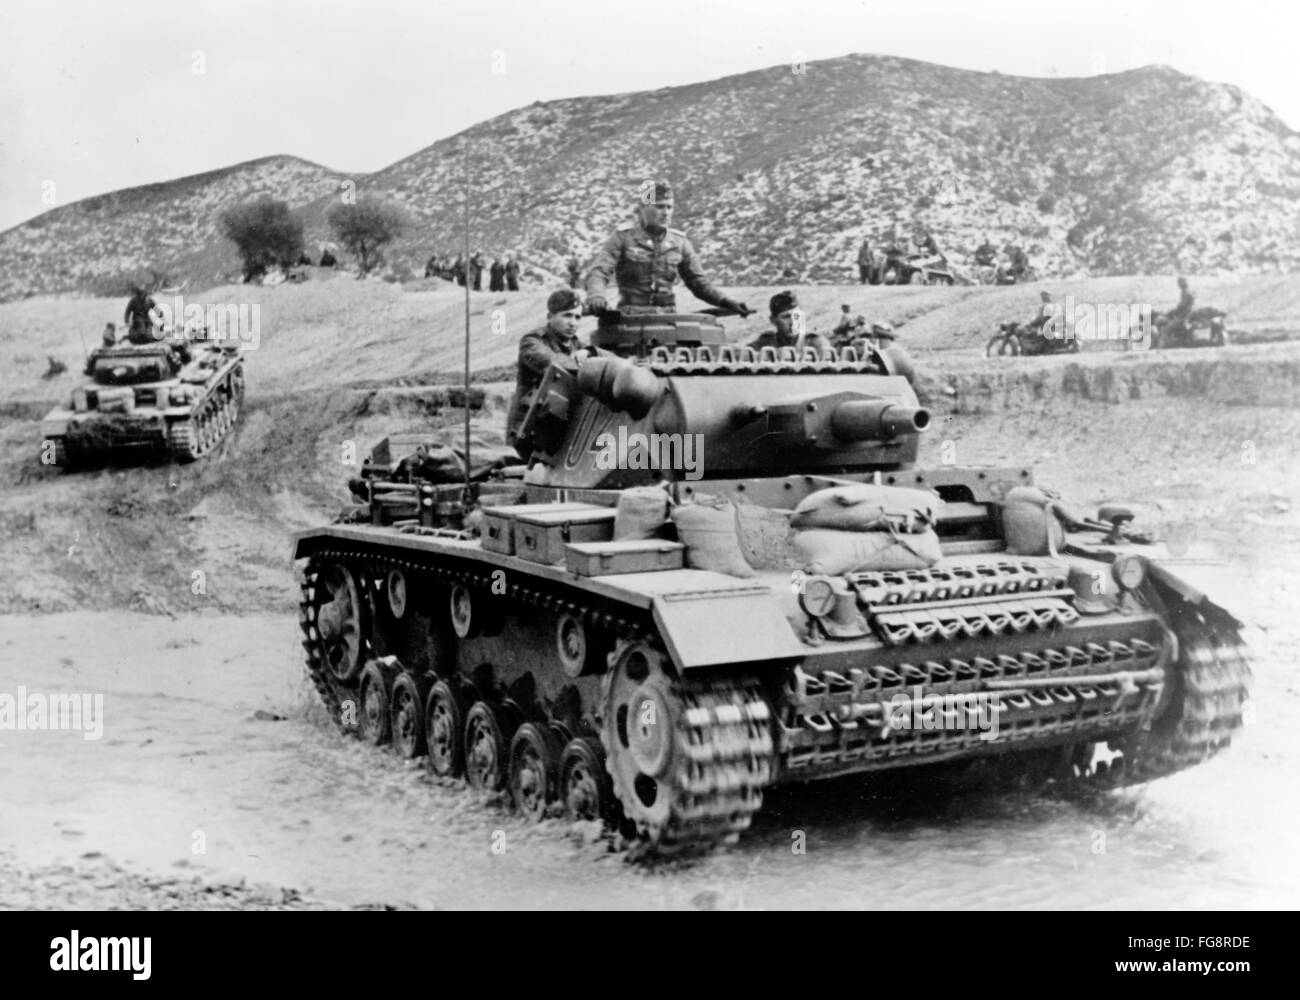 Le tableau de la propagande nazie montre des soldats de la Wehrmacht allemande sur des chars en Tunisie. La photo a été prise en février 1943. Fotoarchiv für Zeitgeschichte - PAS DE SERVICE DE VIREMENT - Banque D'Images